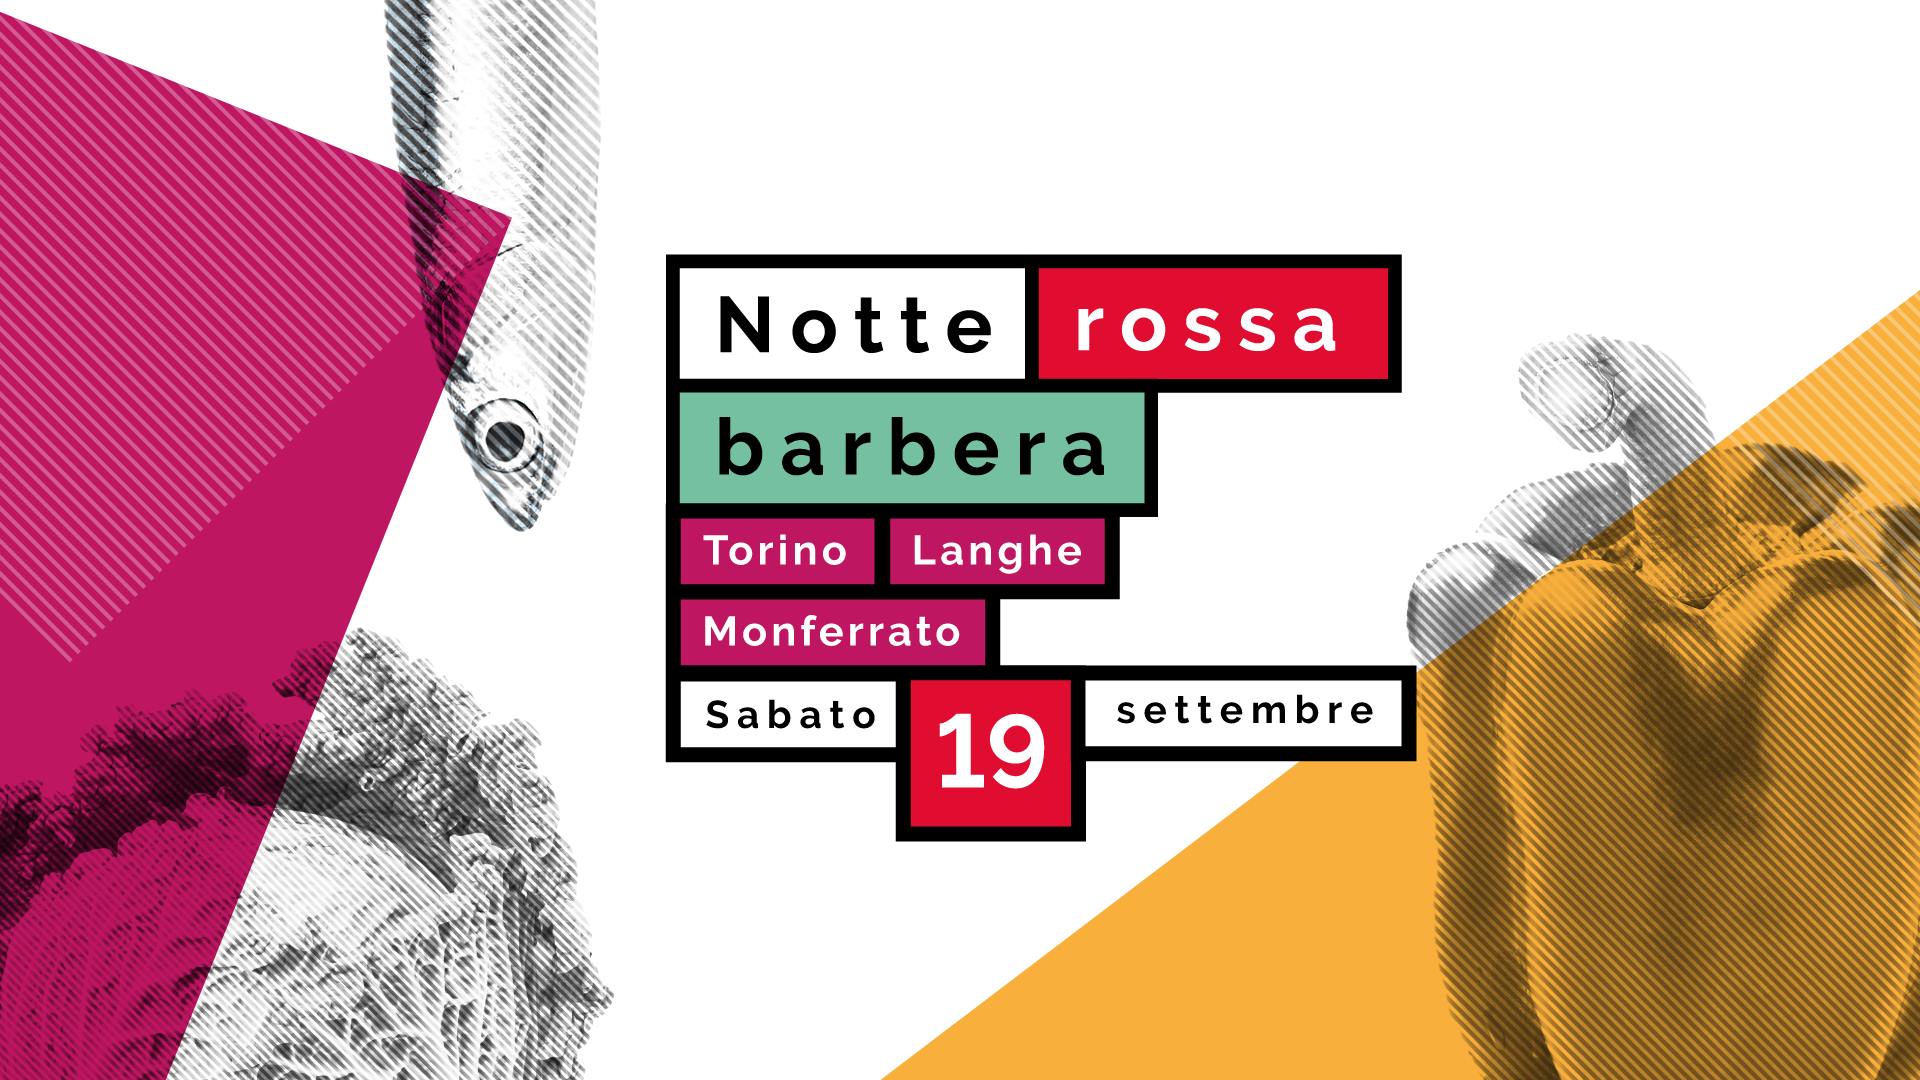 Notte Rossa Barbera | 19 Settembre - Torino, Langhe e Monferrato